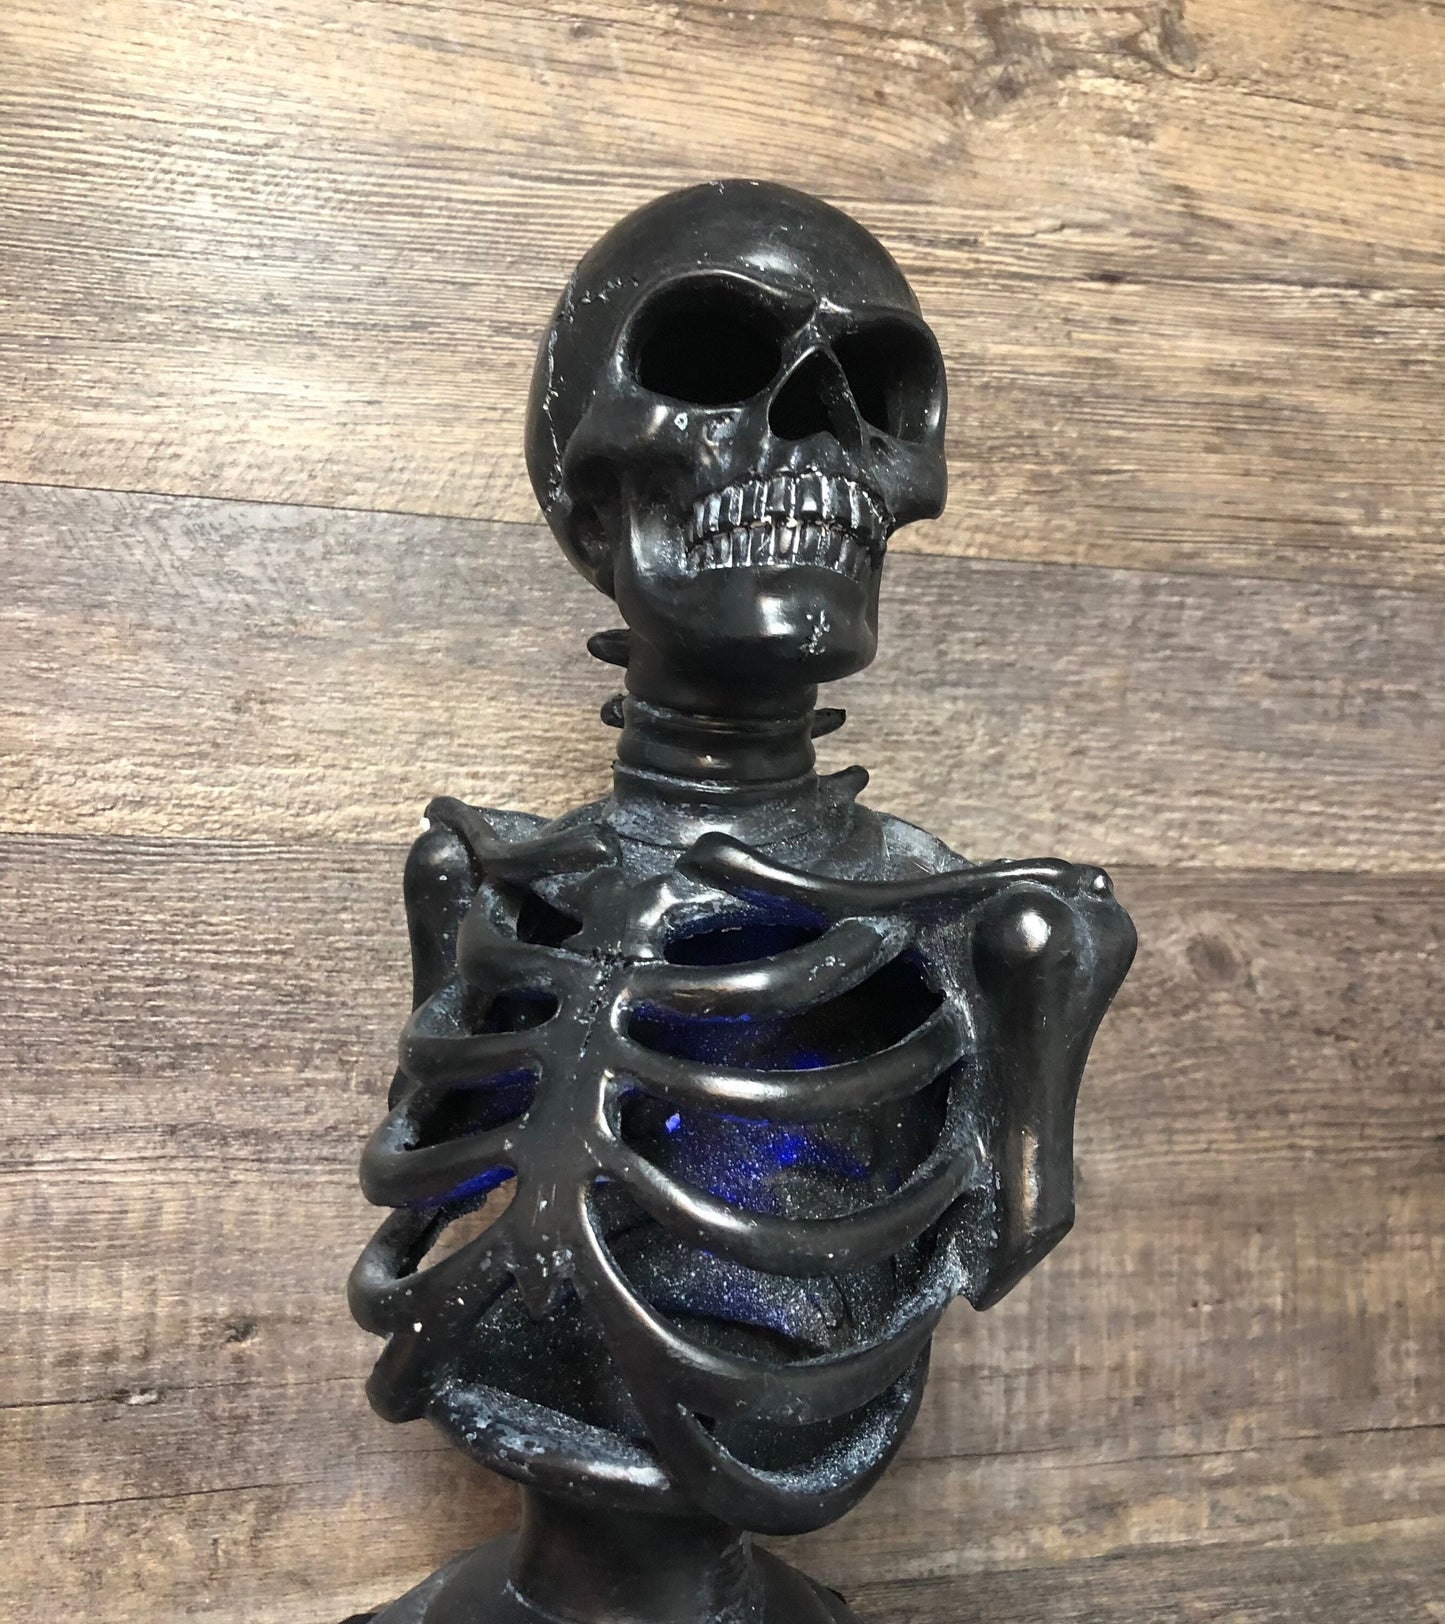 Halloween Trophy Skeleton Scariest Costume Contest LIGHTS UP Best Costume Dia De Los Muertos Skeleton Trophies Skull Vintage Halloween Decor